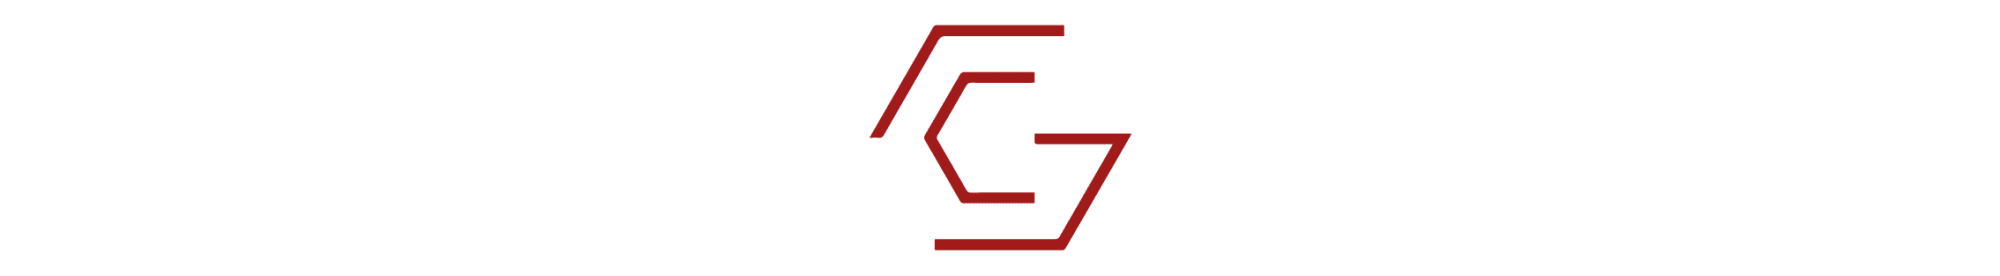 gschwend logo_Zeichenfläche 1